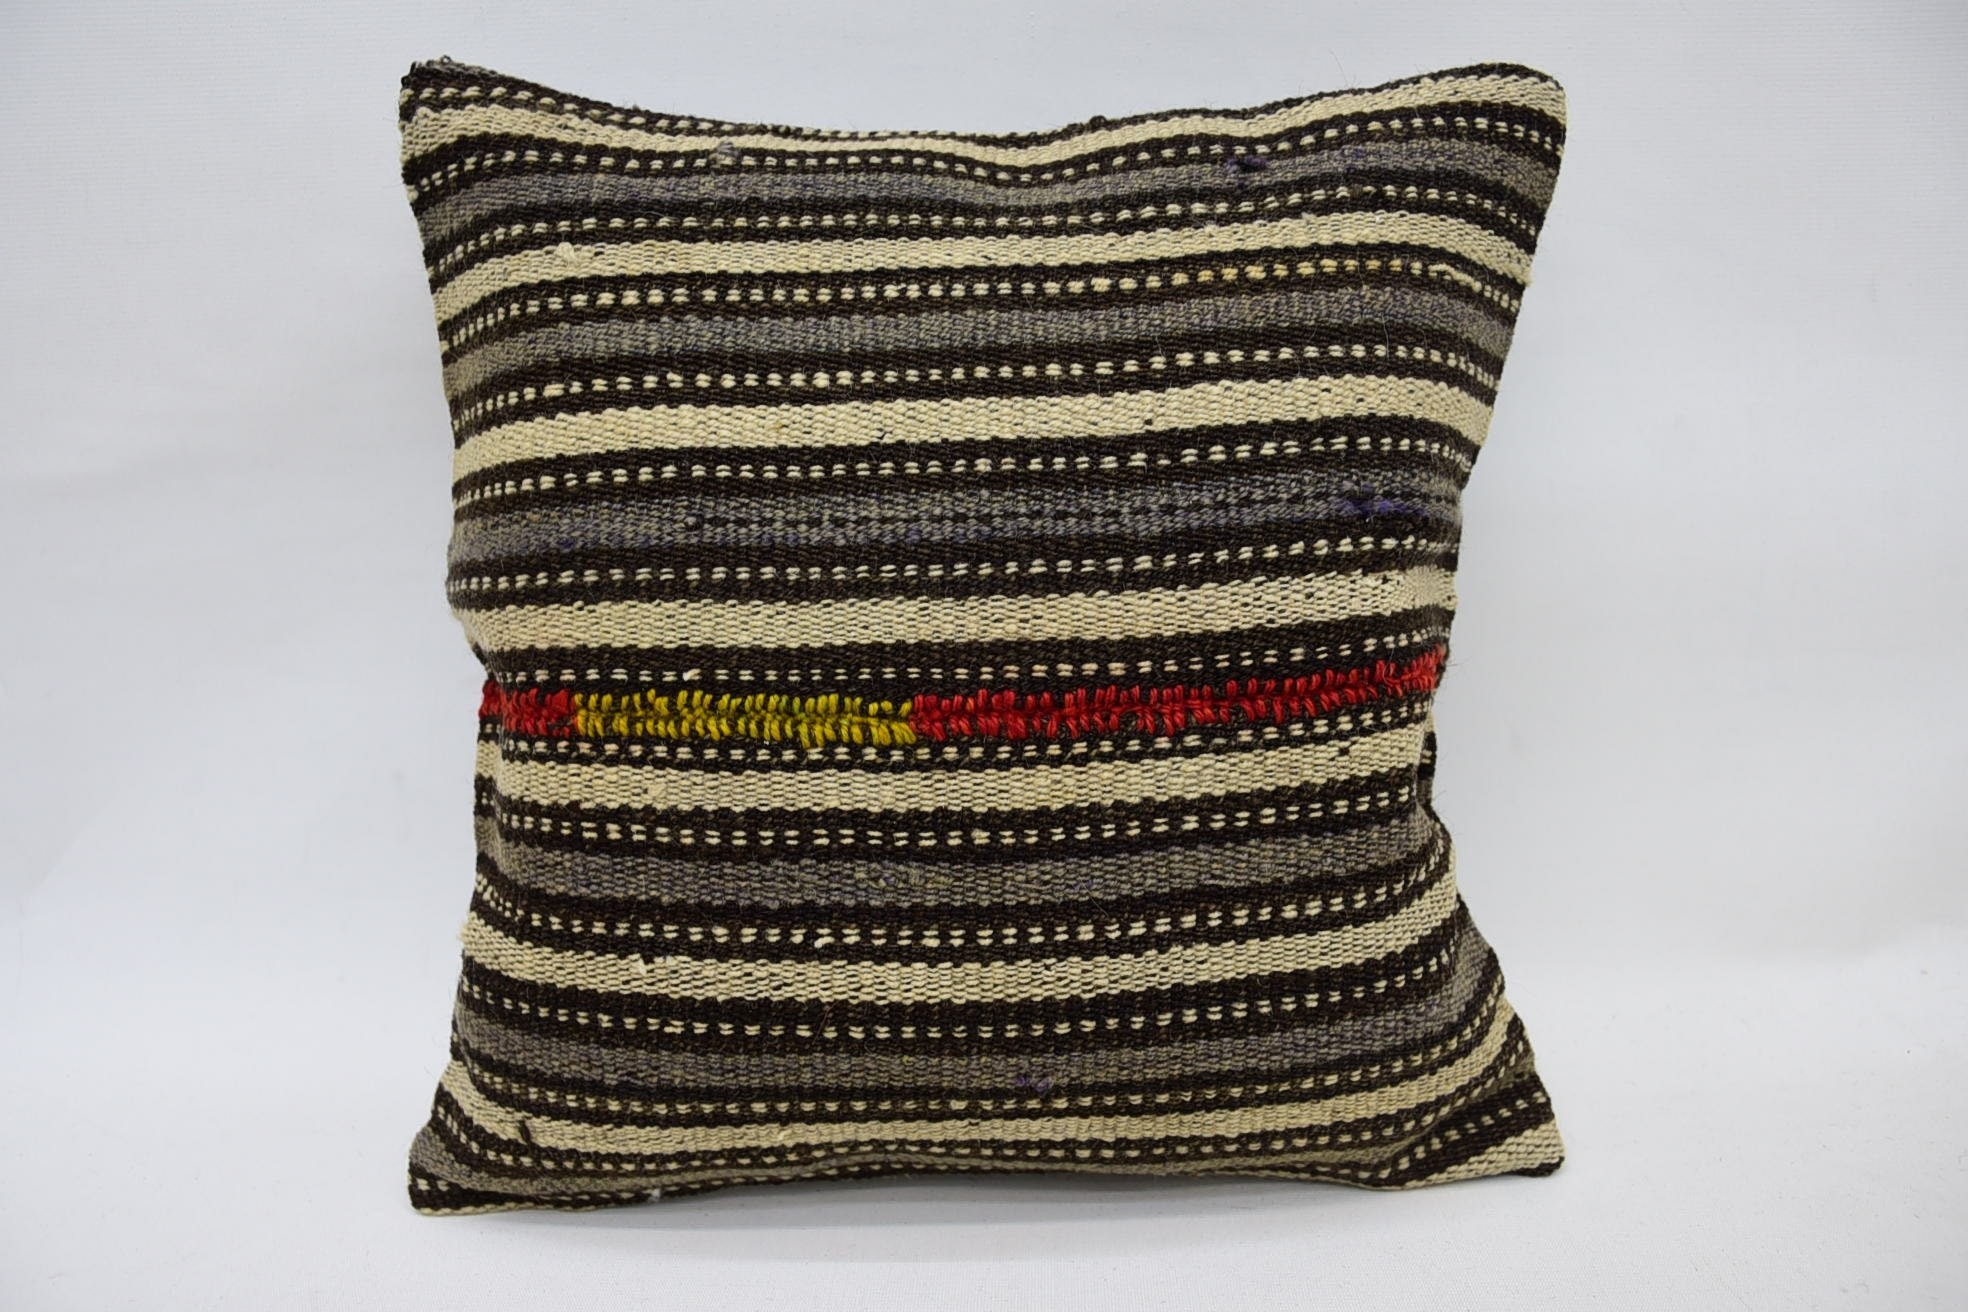 Turkish Pillow, Vintage Kilim Pillow, Custom Pillow, Farmhouse Pillow, Ethnical Kilim Rug Pillow, 14"x14" Beige Pillow Case